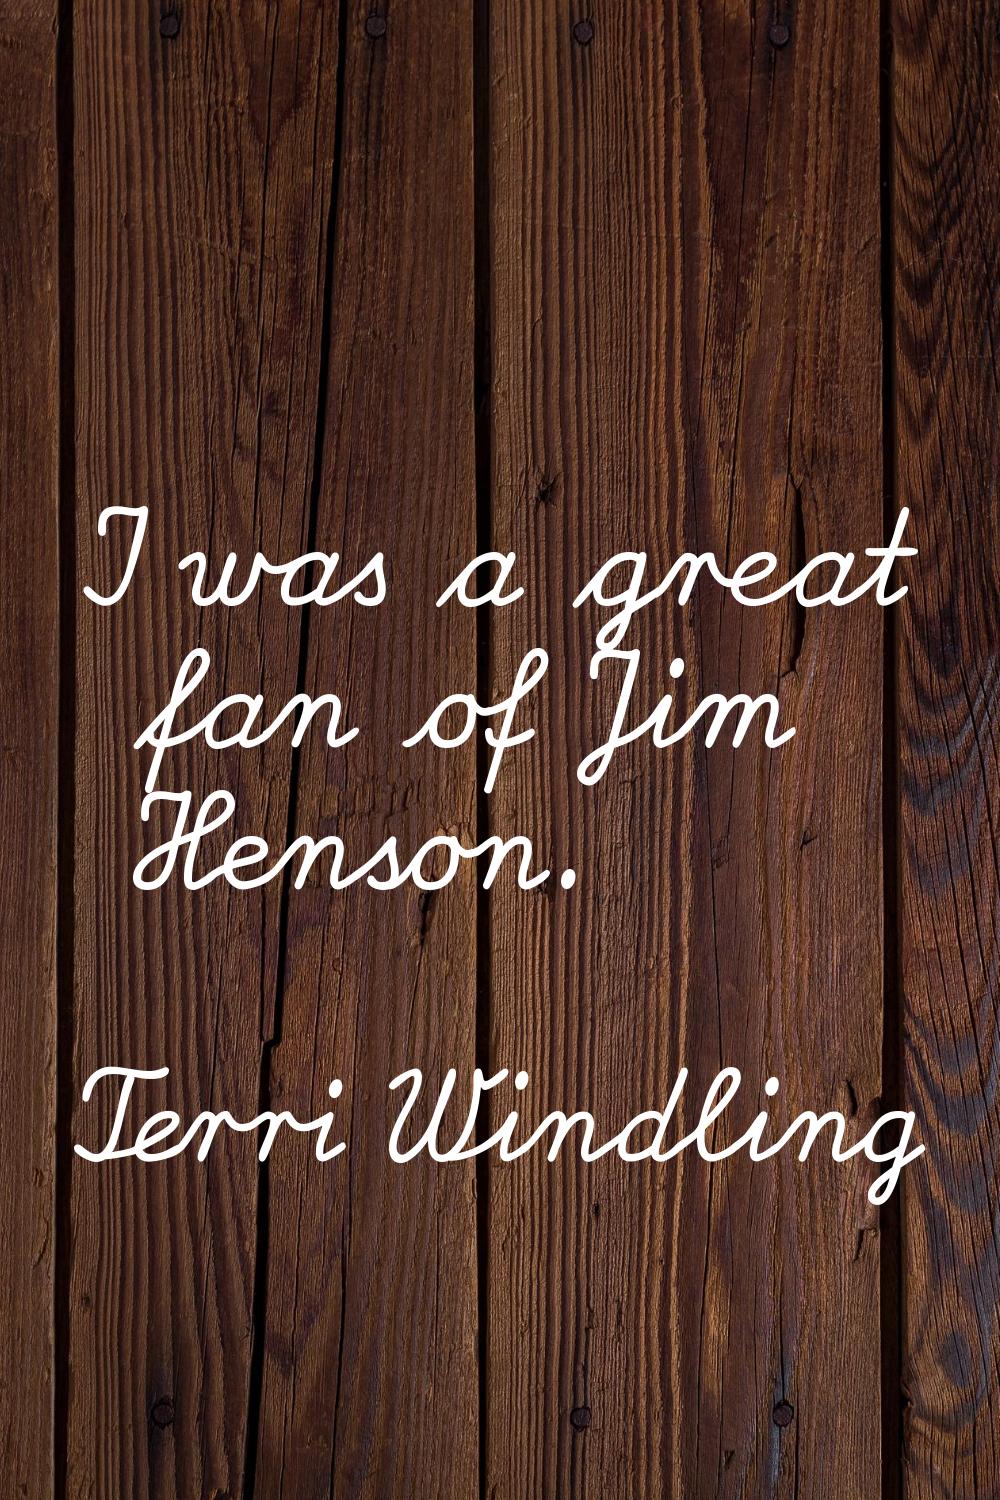 I was a great fan of Jim Henson.